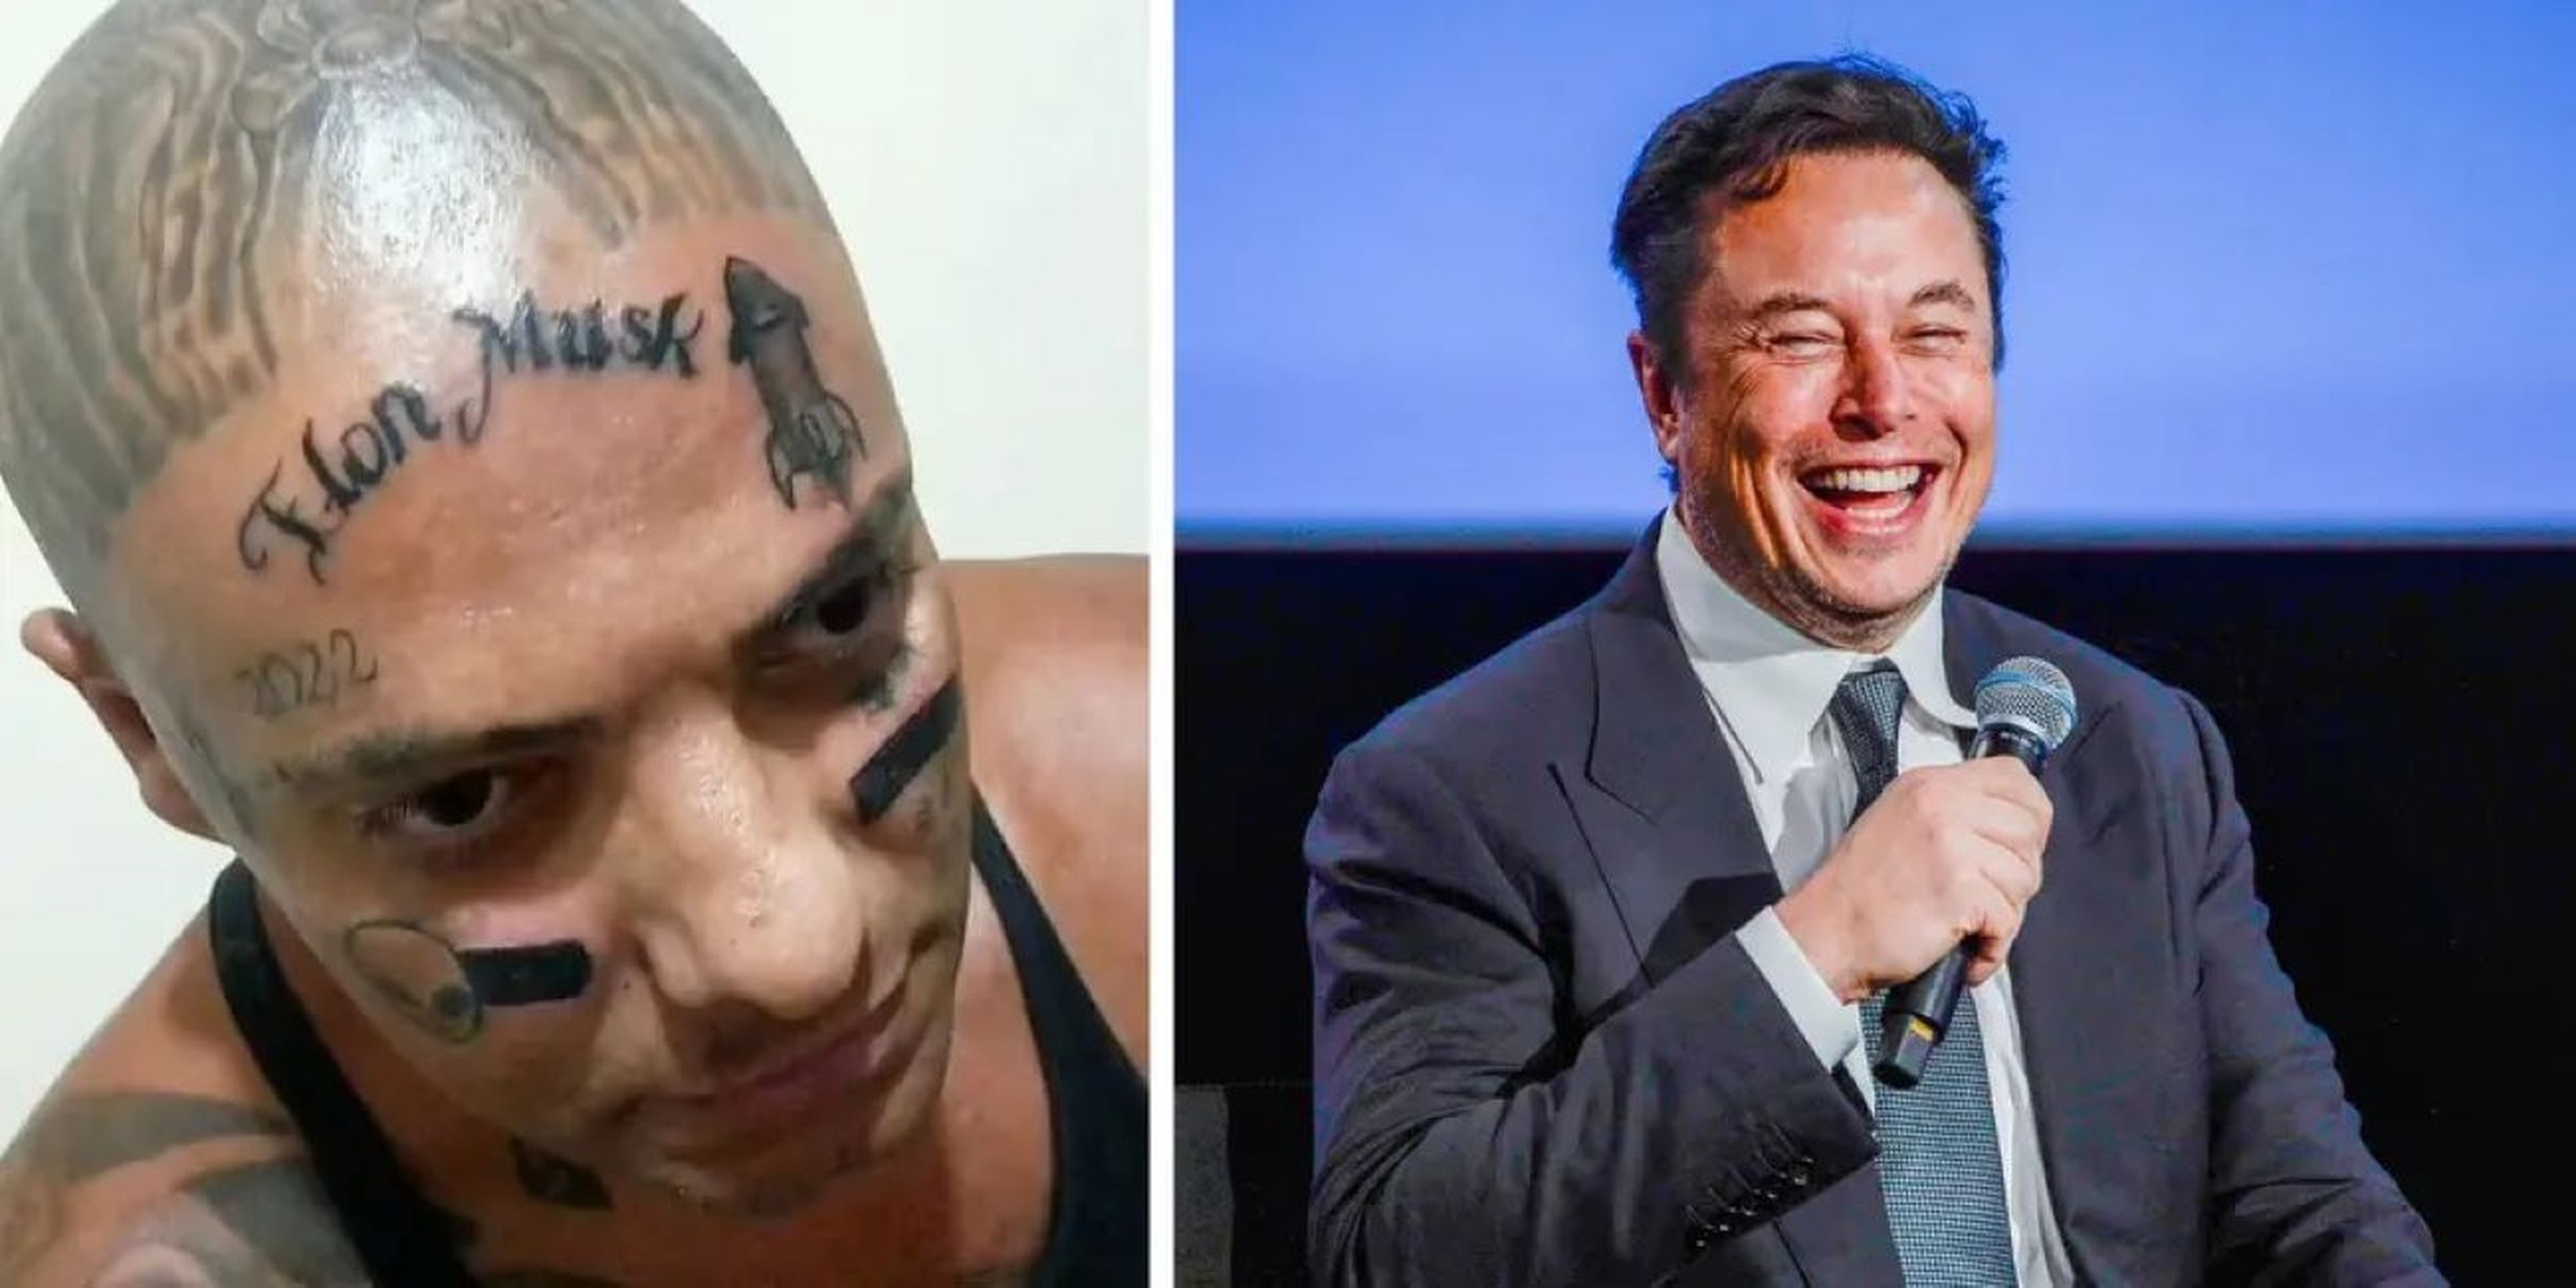 El 'influencer' Rodrigo América con su tatuaje, y Elon Musk.